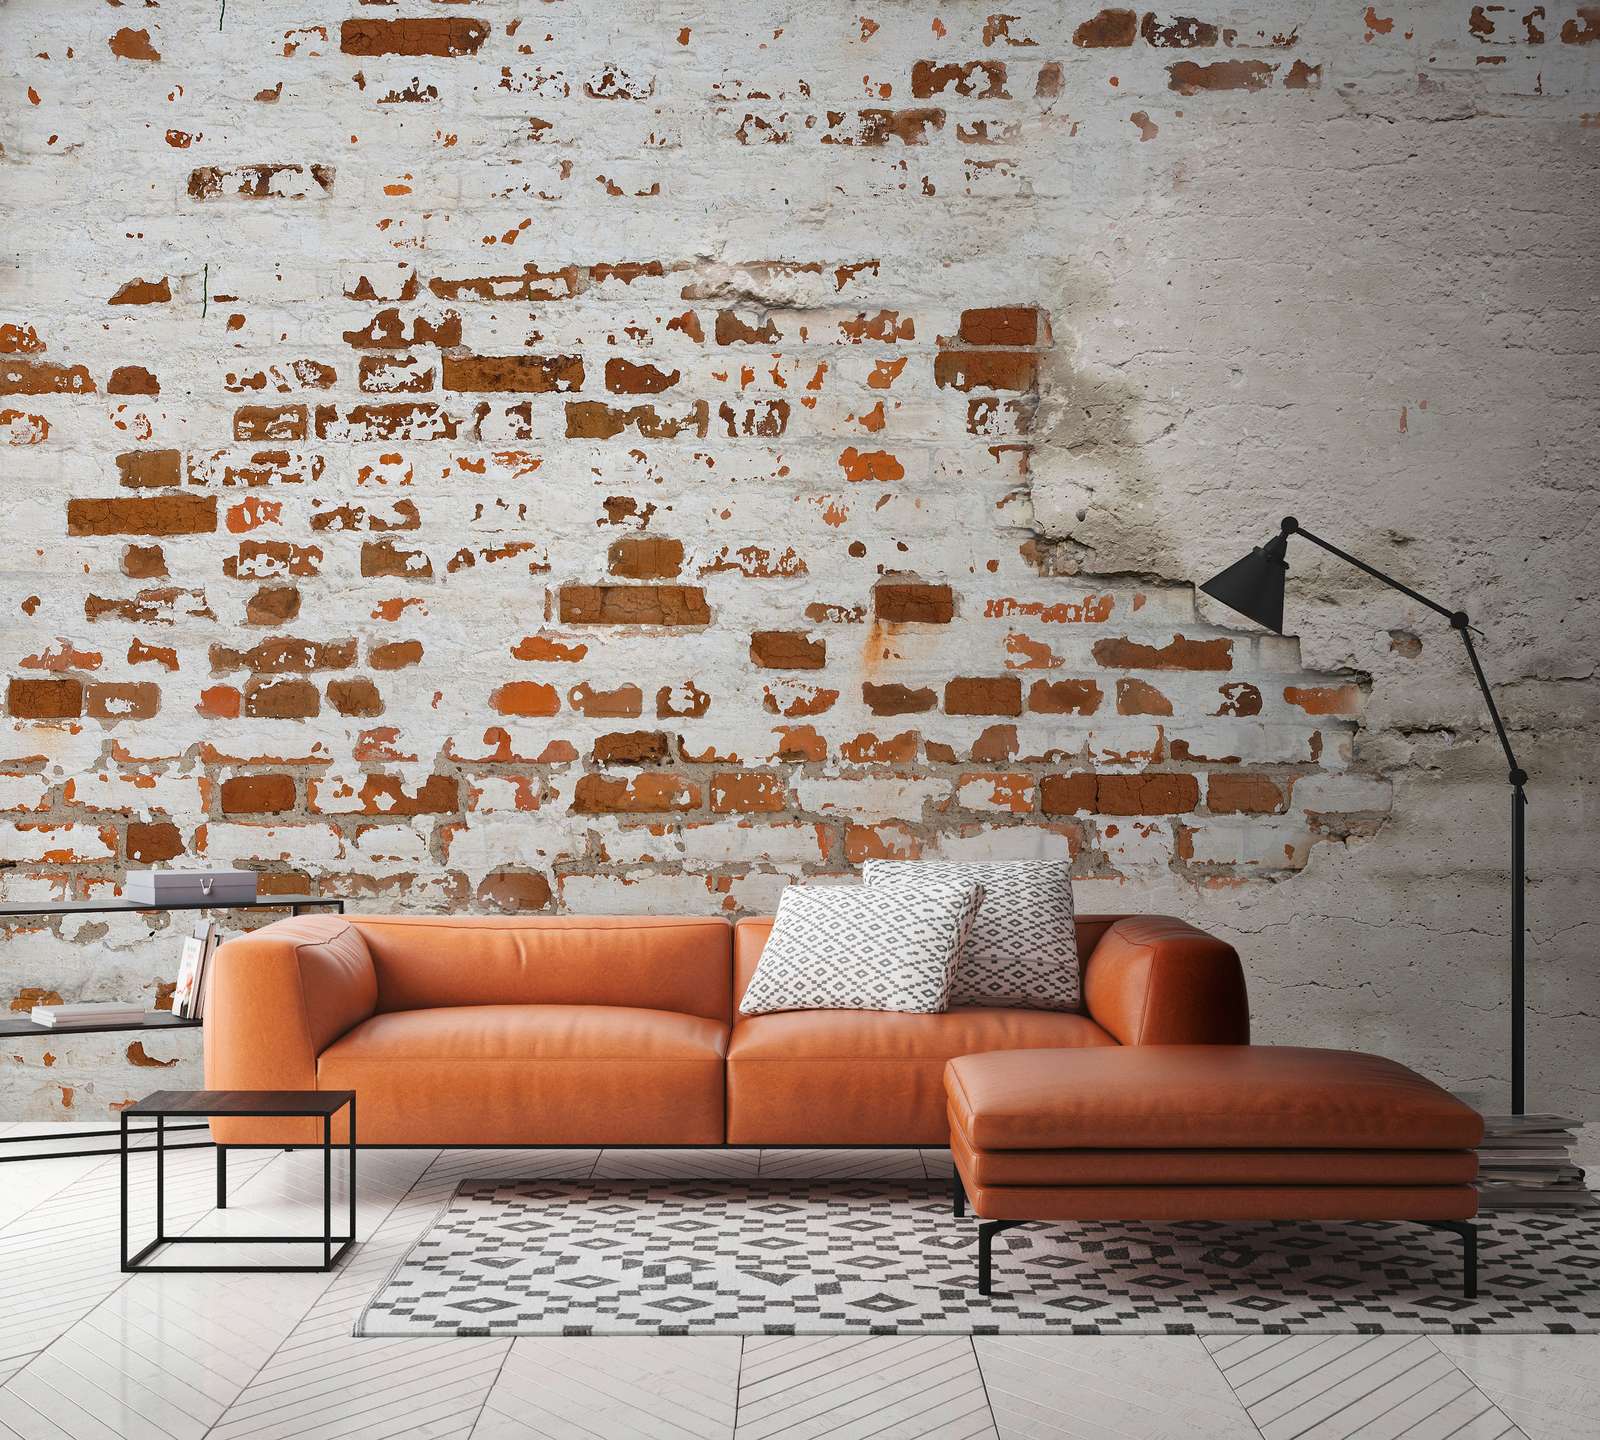             Papier peint panoramique Mur de briques crépi en 3D style industriel - marron, gris
        